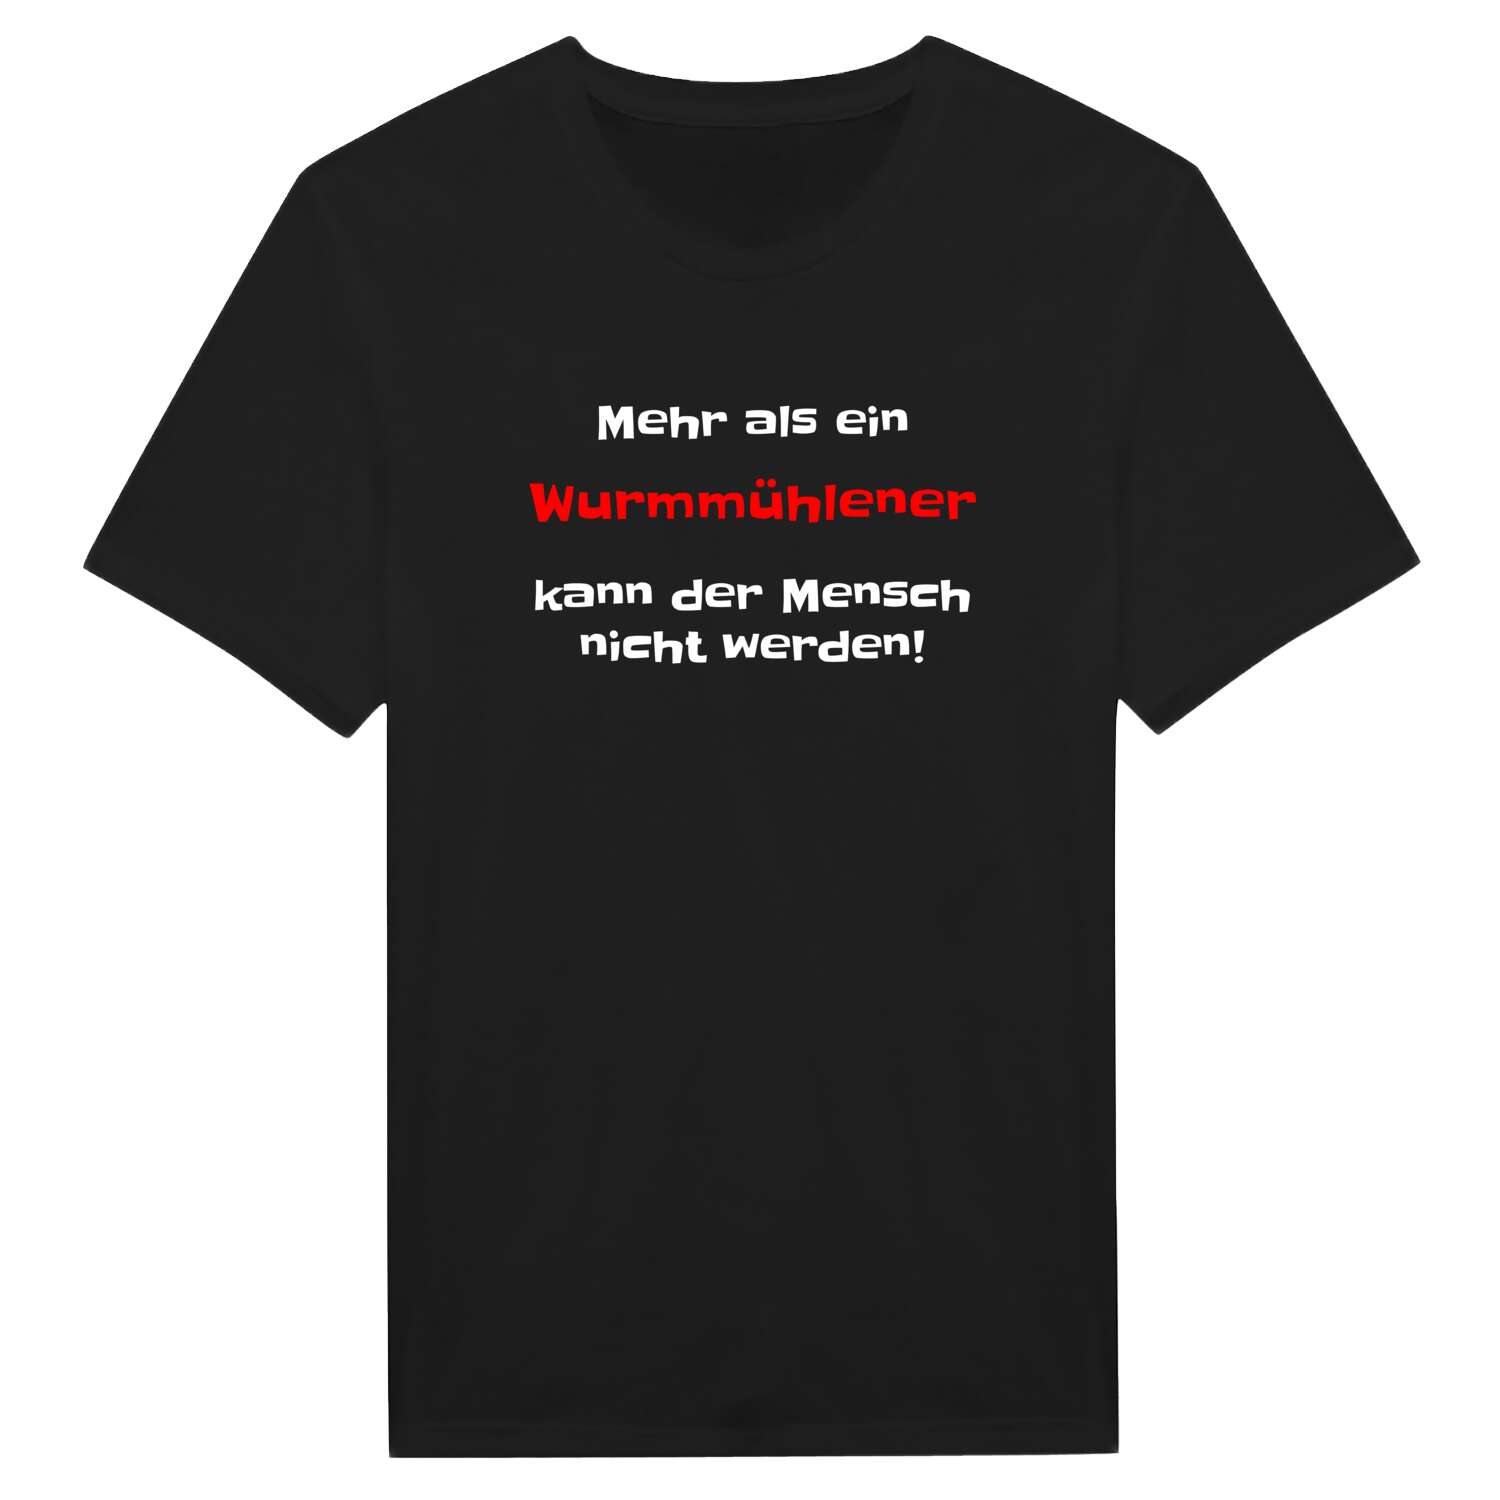 Wurmmühle T-Shirt »Mehr als ein«